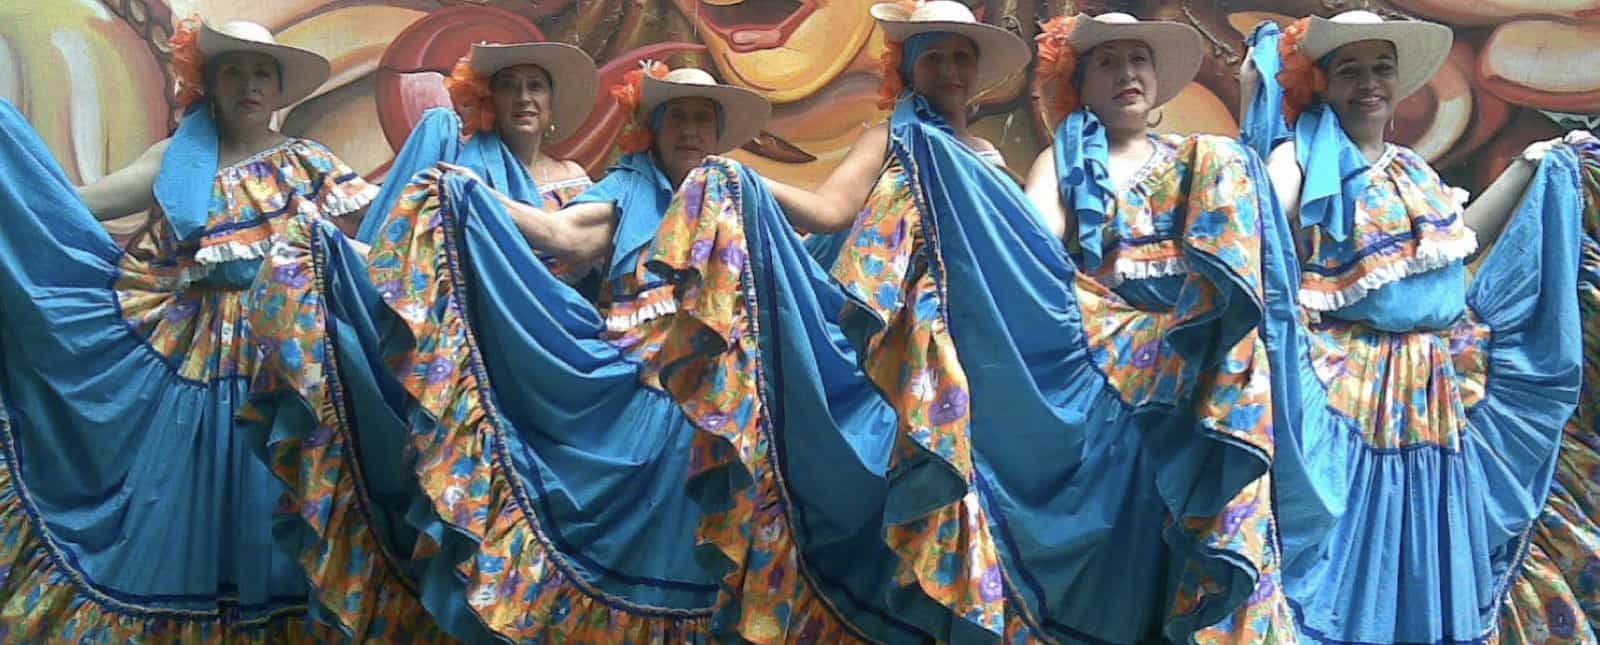 Traje típico de Sinaloa - Cultura Colectiva